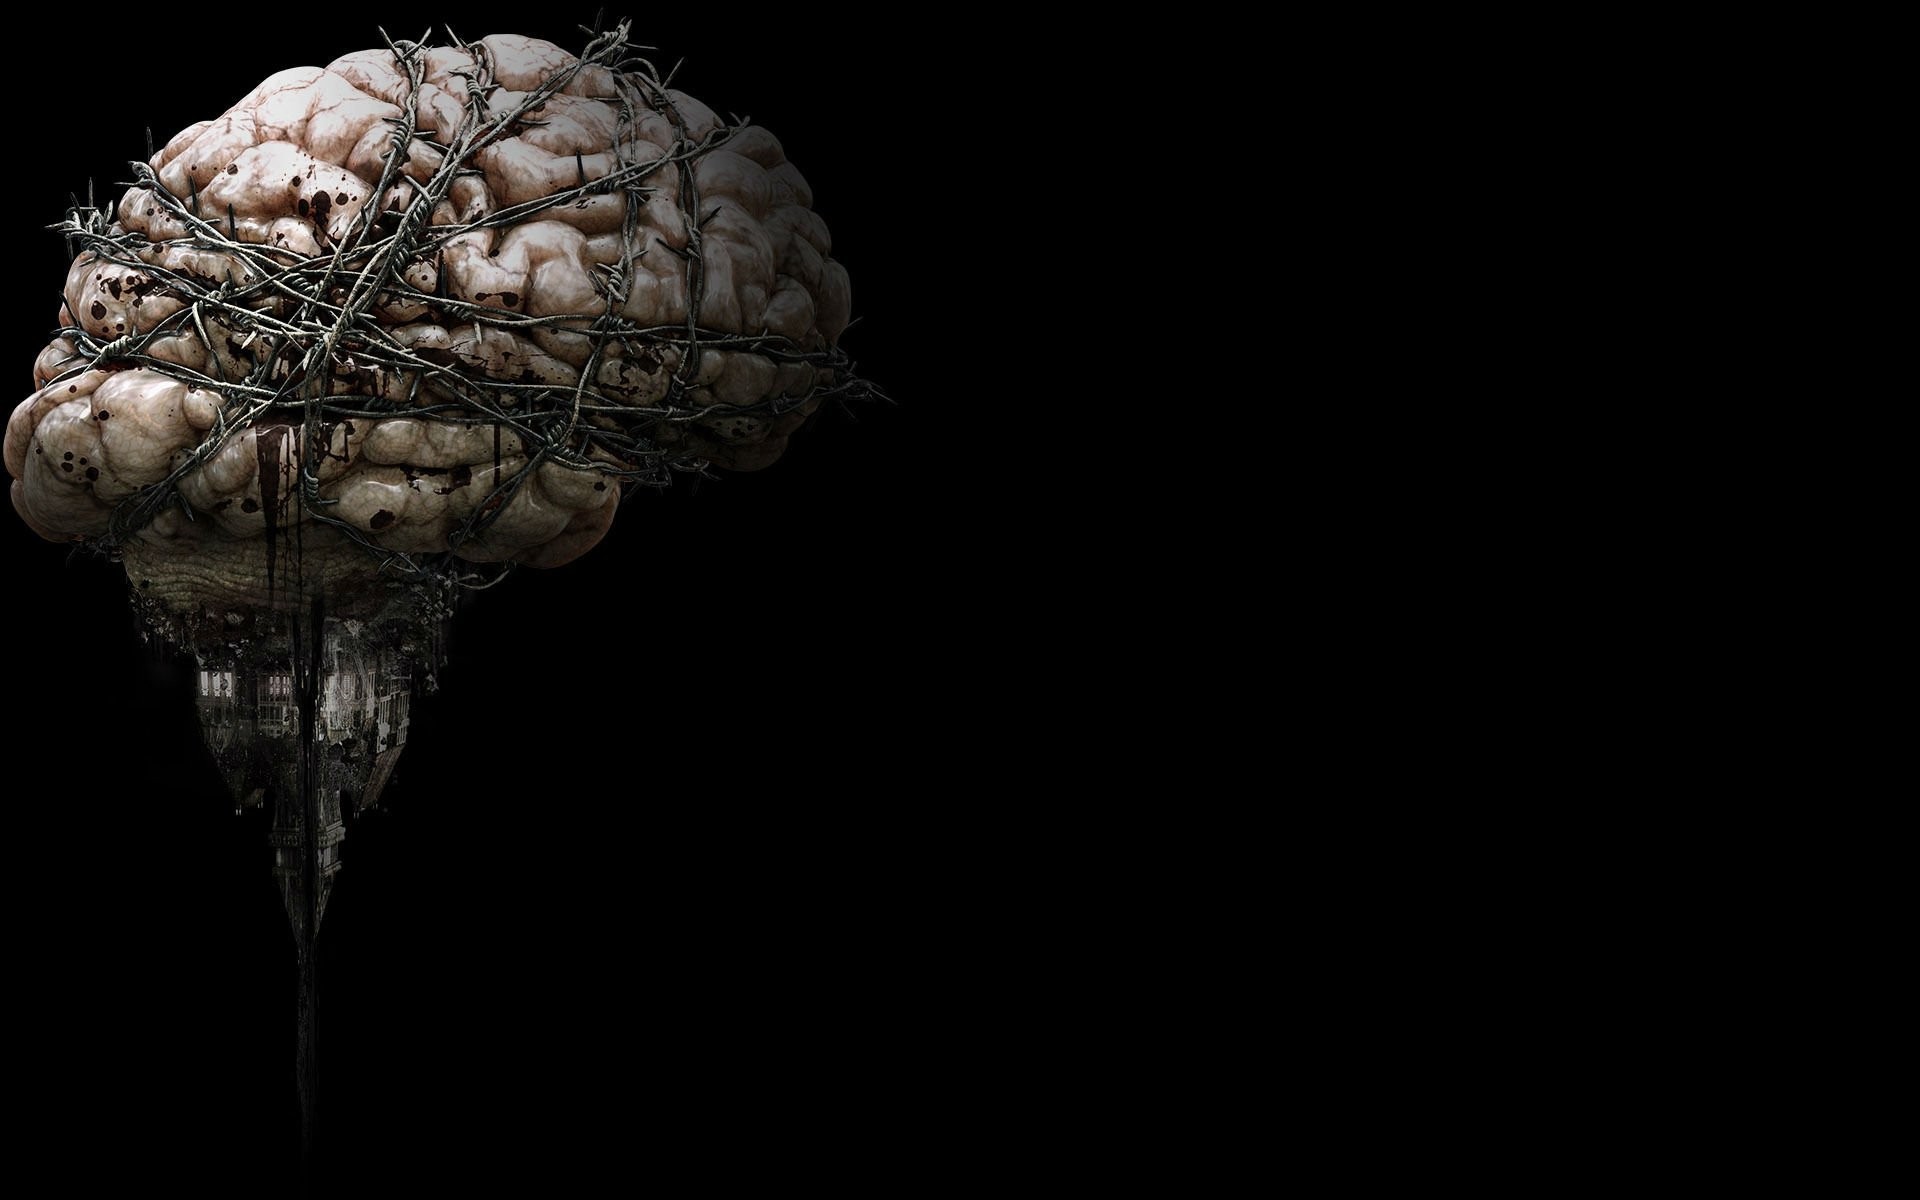 cervello sfondo hd,testa,fotografia di still life,cervello,fotografia,stock photography